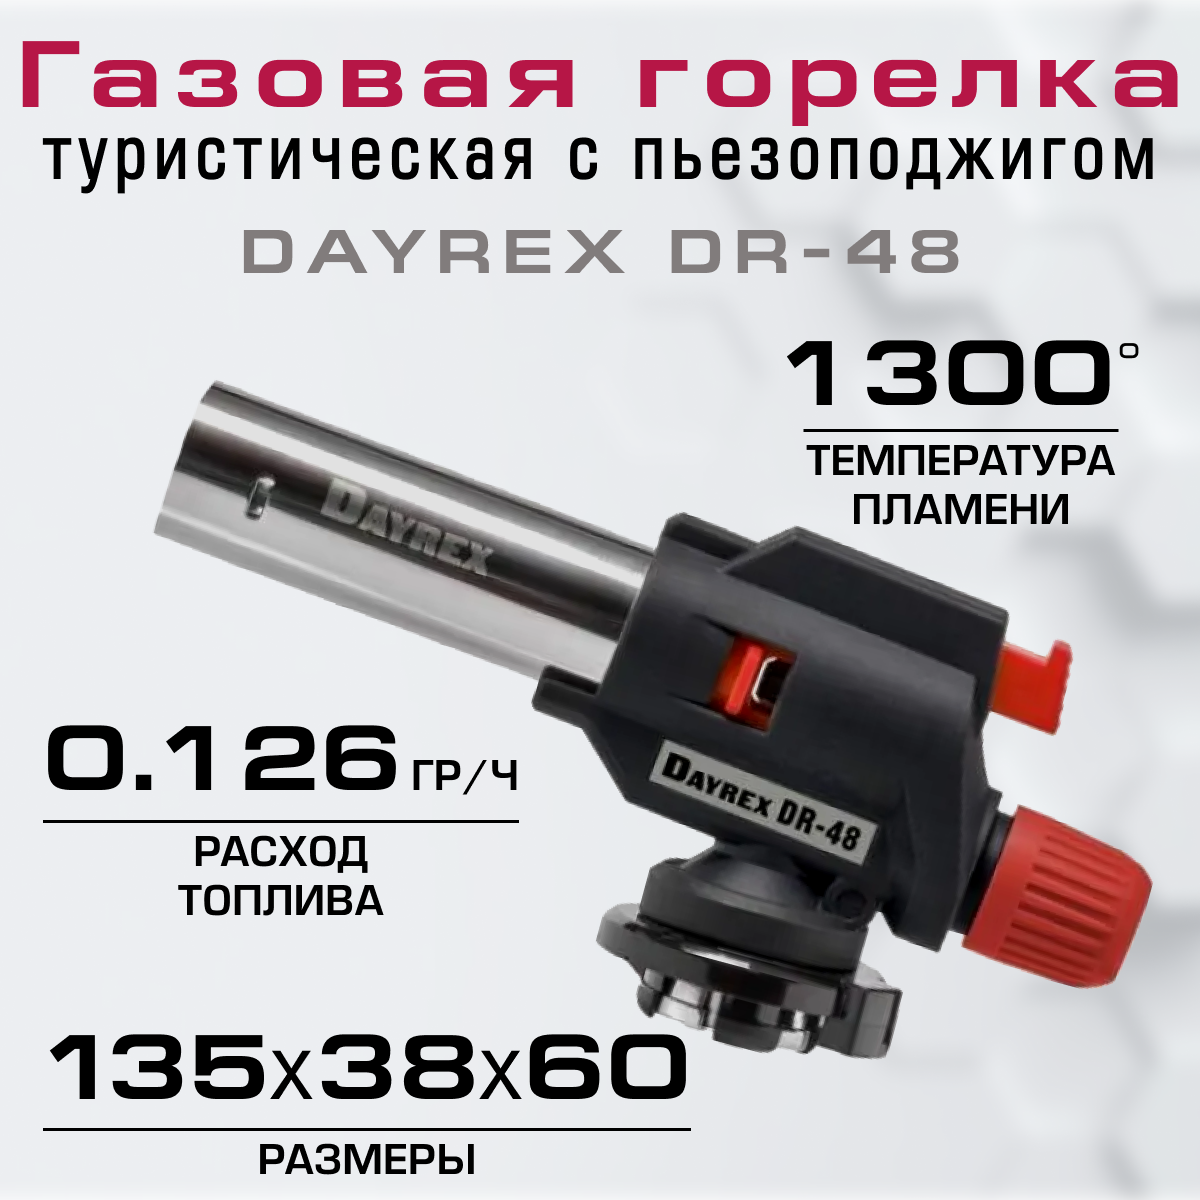 DAYREX-48 газовая горелка